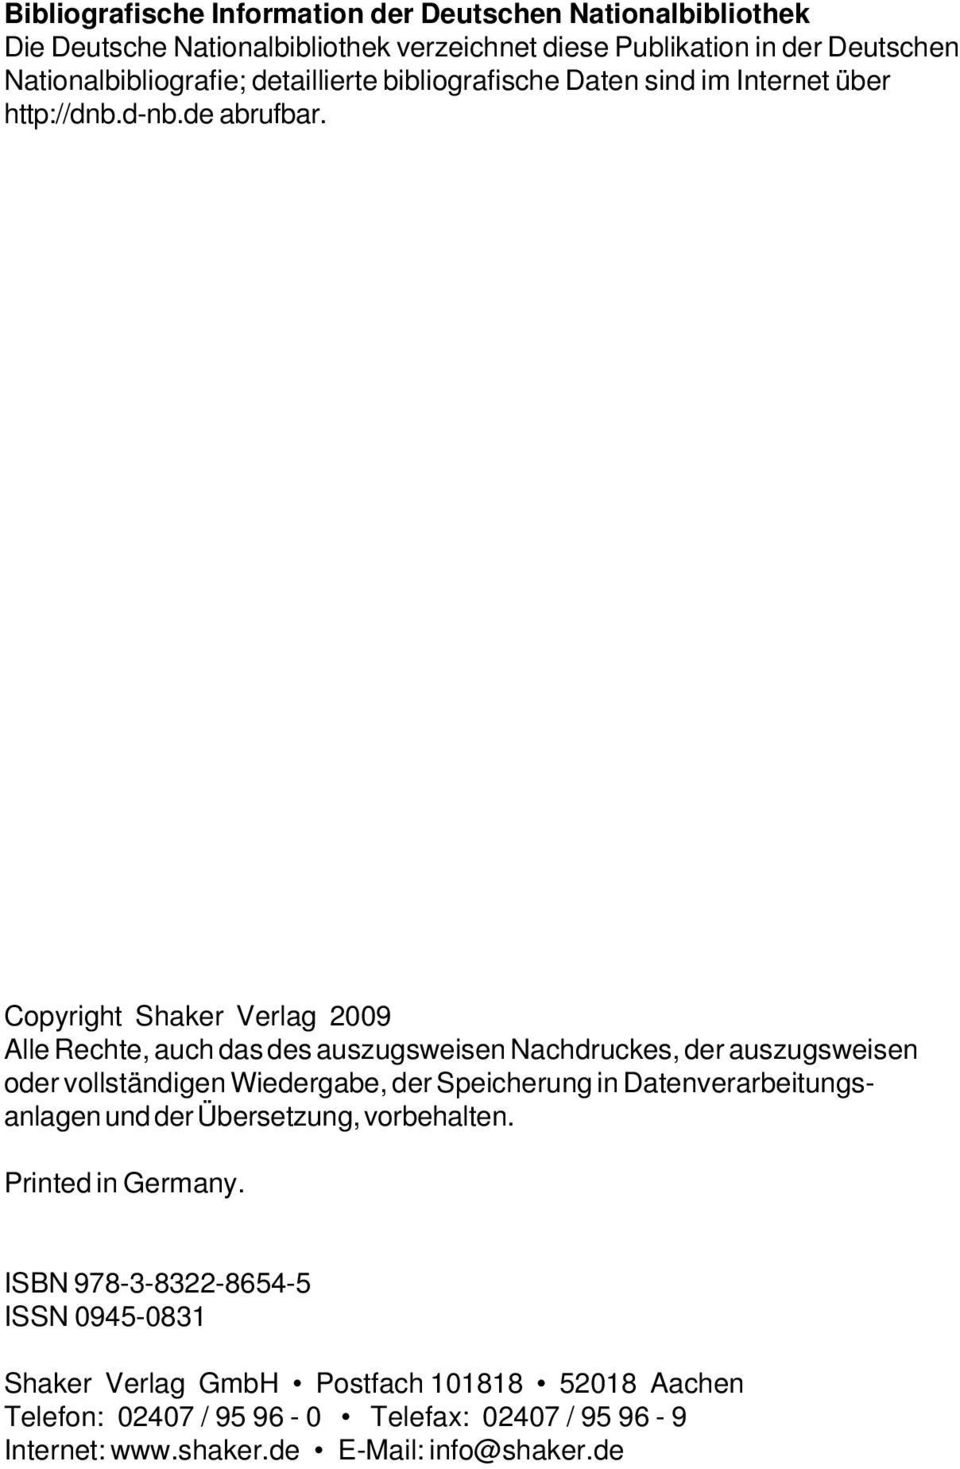 Copyright Shaker Verlag 2009 Alle Rechte, auch das des auszugsweisen Nachdruckes, der auszugsweisen oder vollständigen Wiedergabe, der Speicherung in